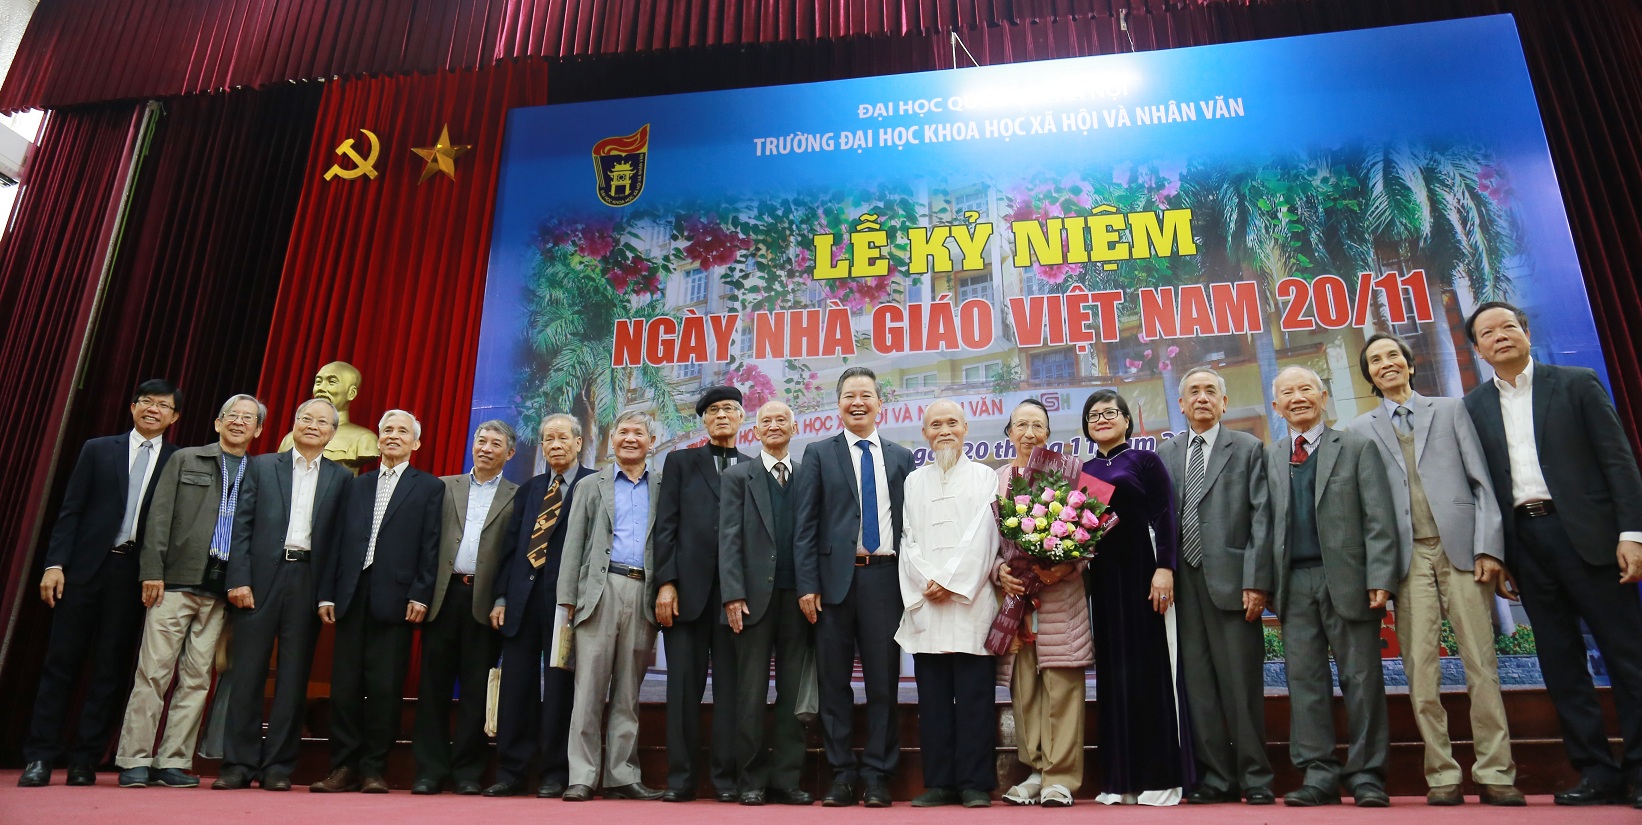 Ngày Hiến chương nhà giáo Việt Nam: Tri ân các thế hệ thầy cô giáo